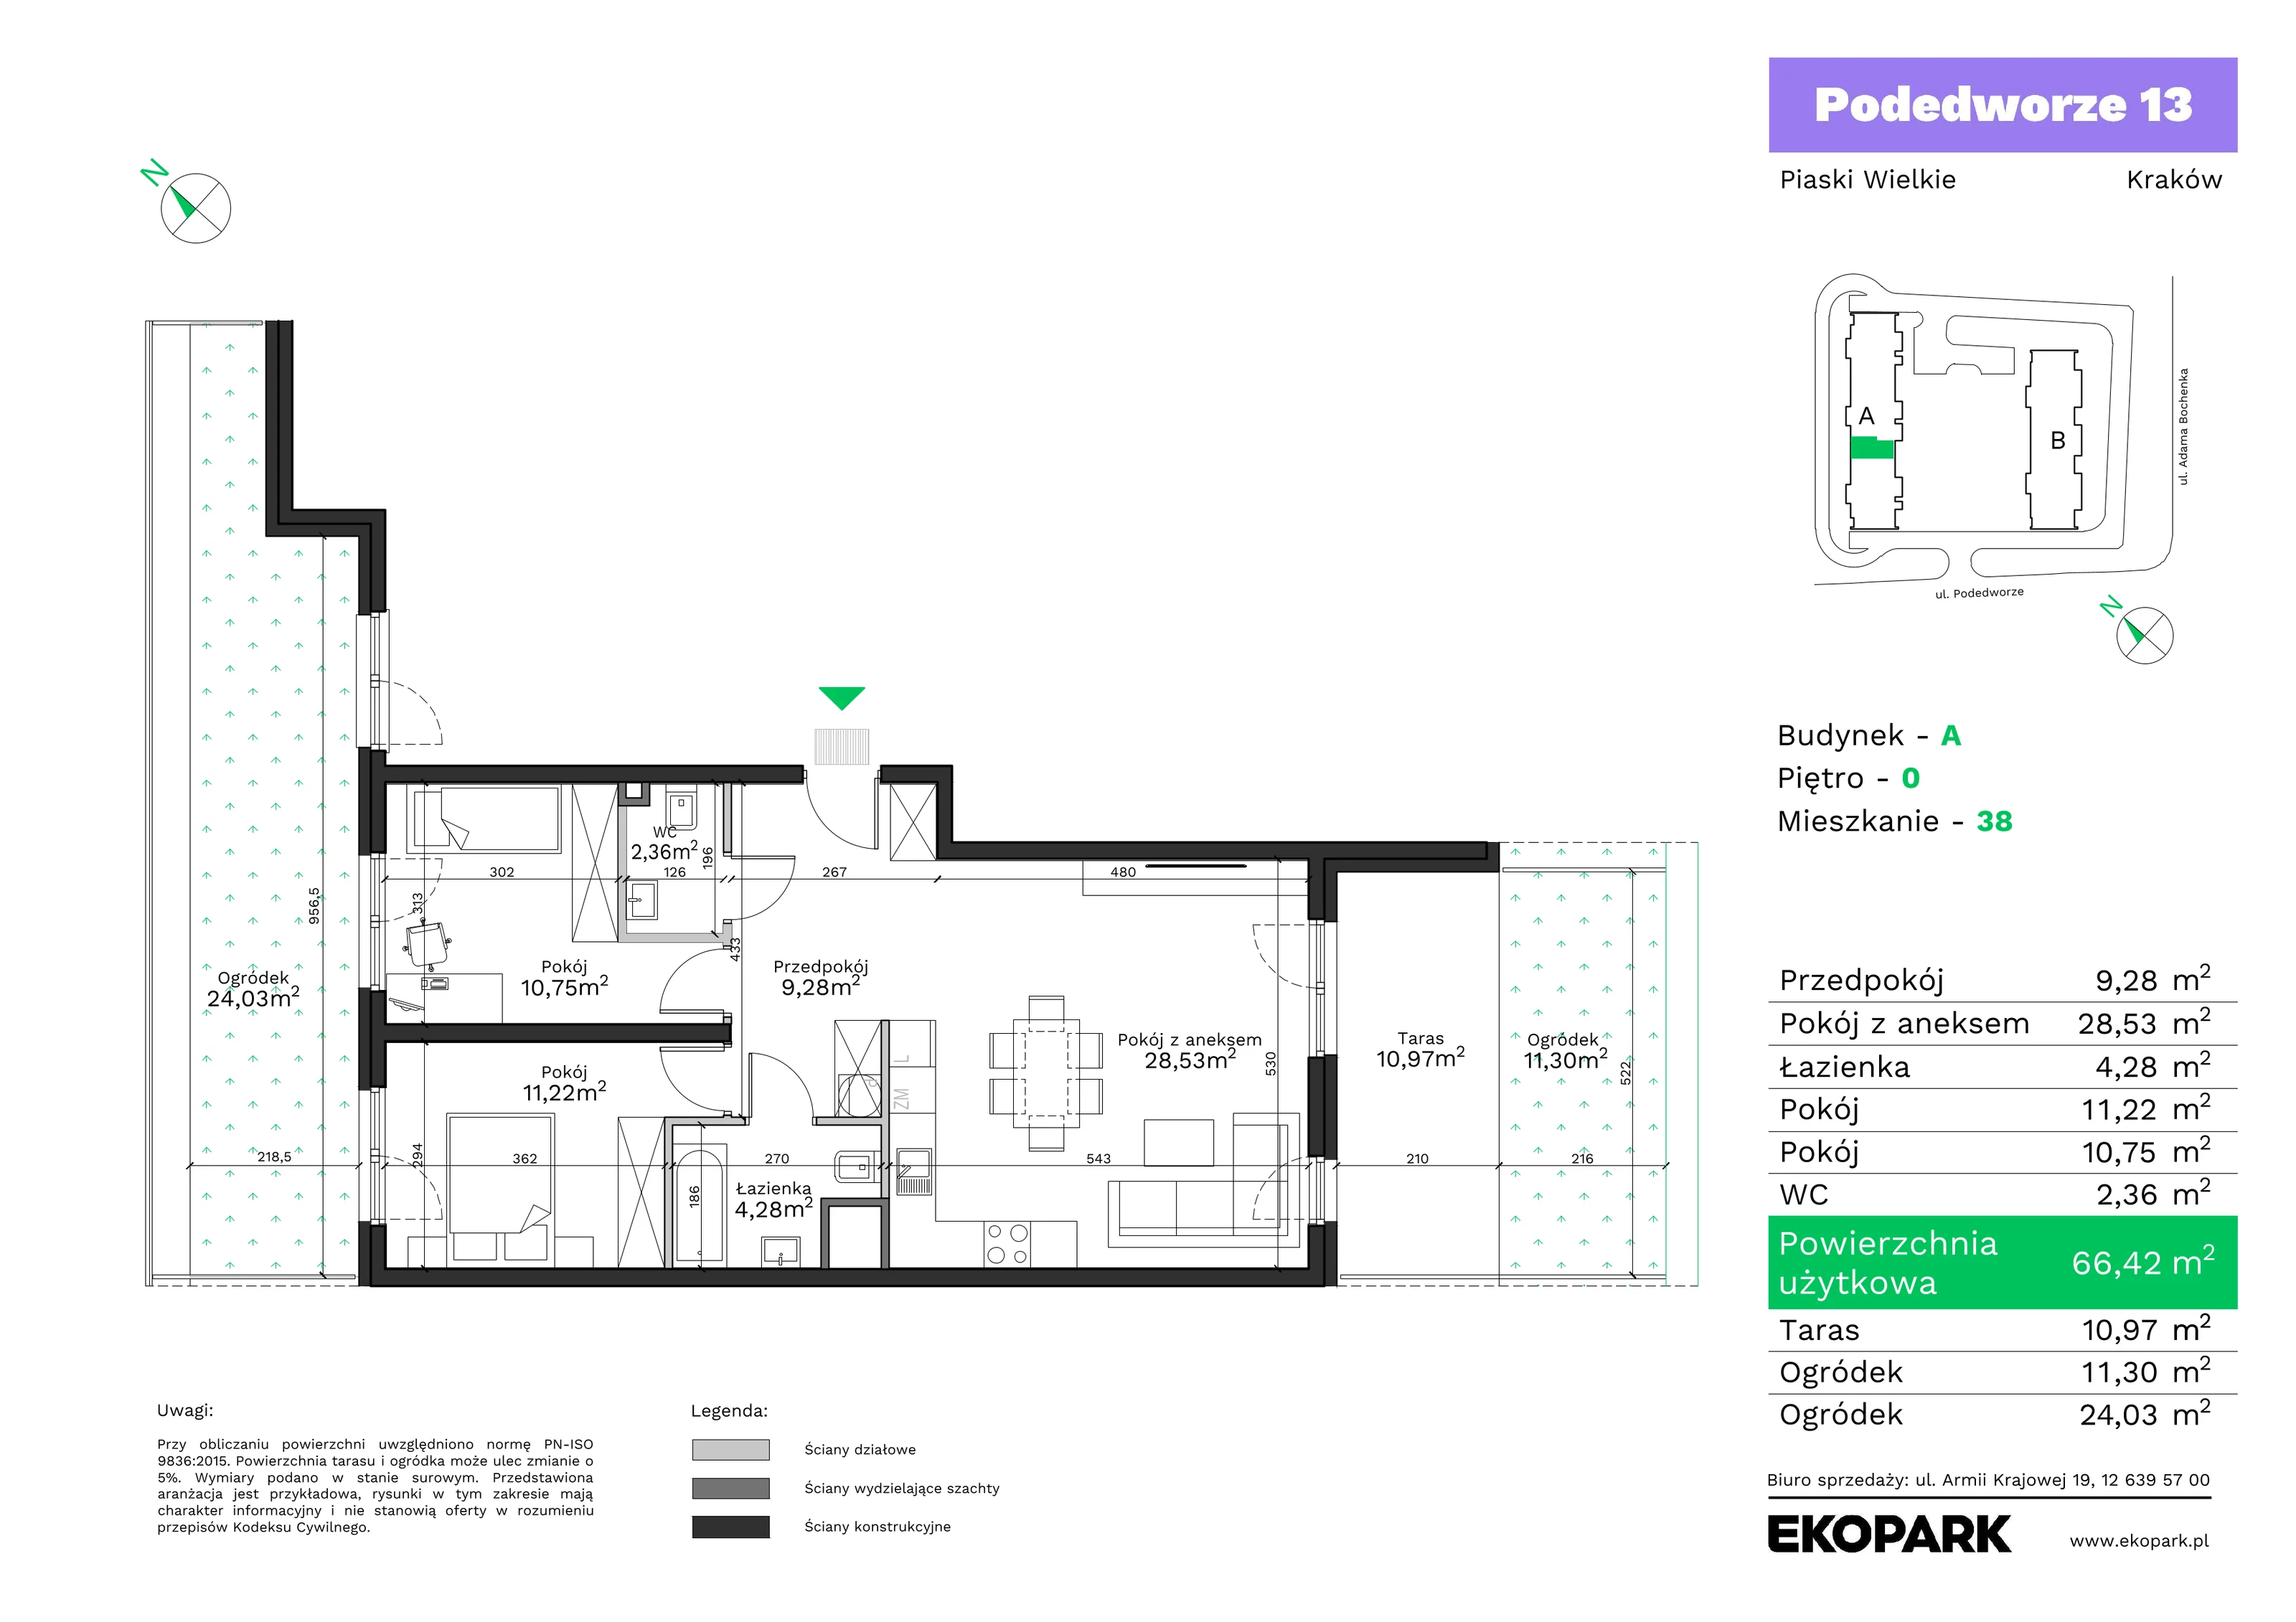 Mieszkanie 66,42 m², parter, oferta nr A38, Podedworze 13, Kraków, Podgórze Duchackie, Piaski Wielkie, ul. Podedworze 13